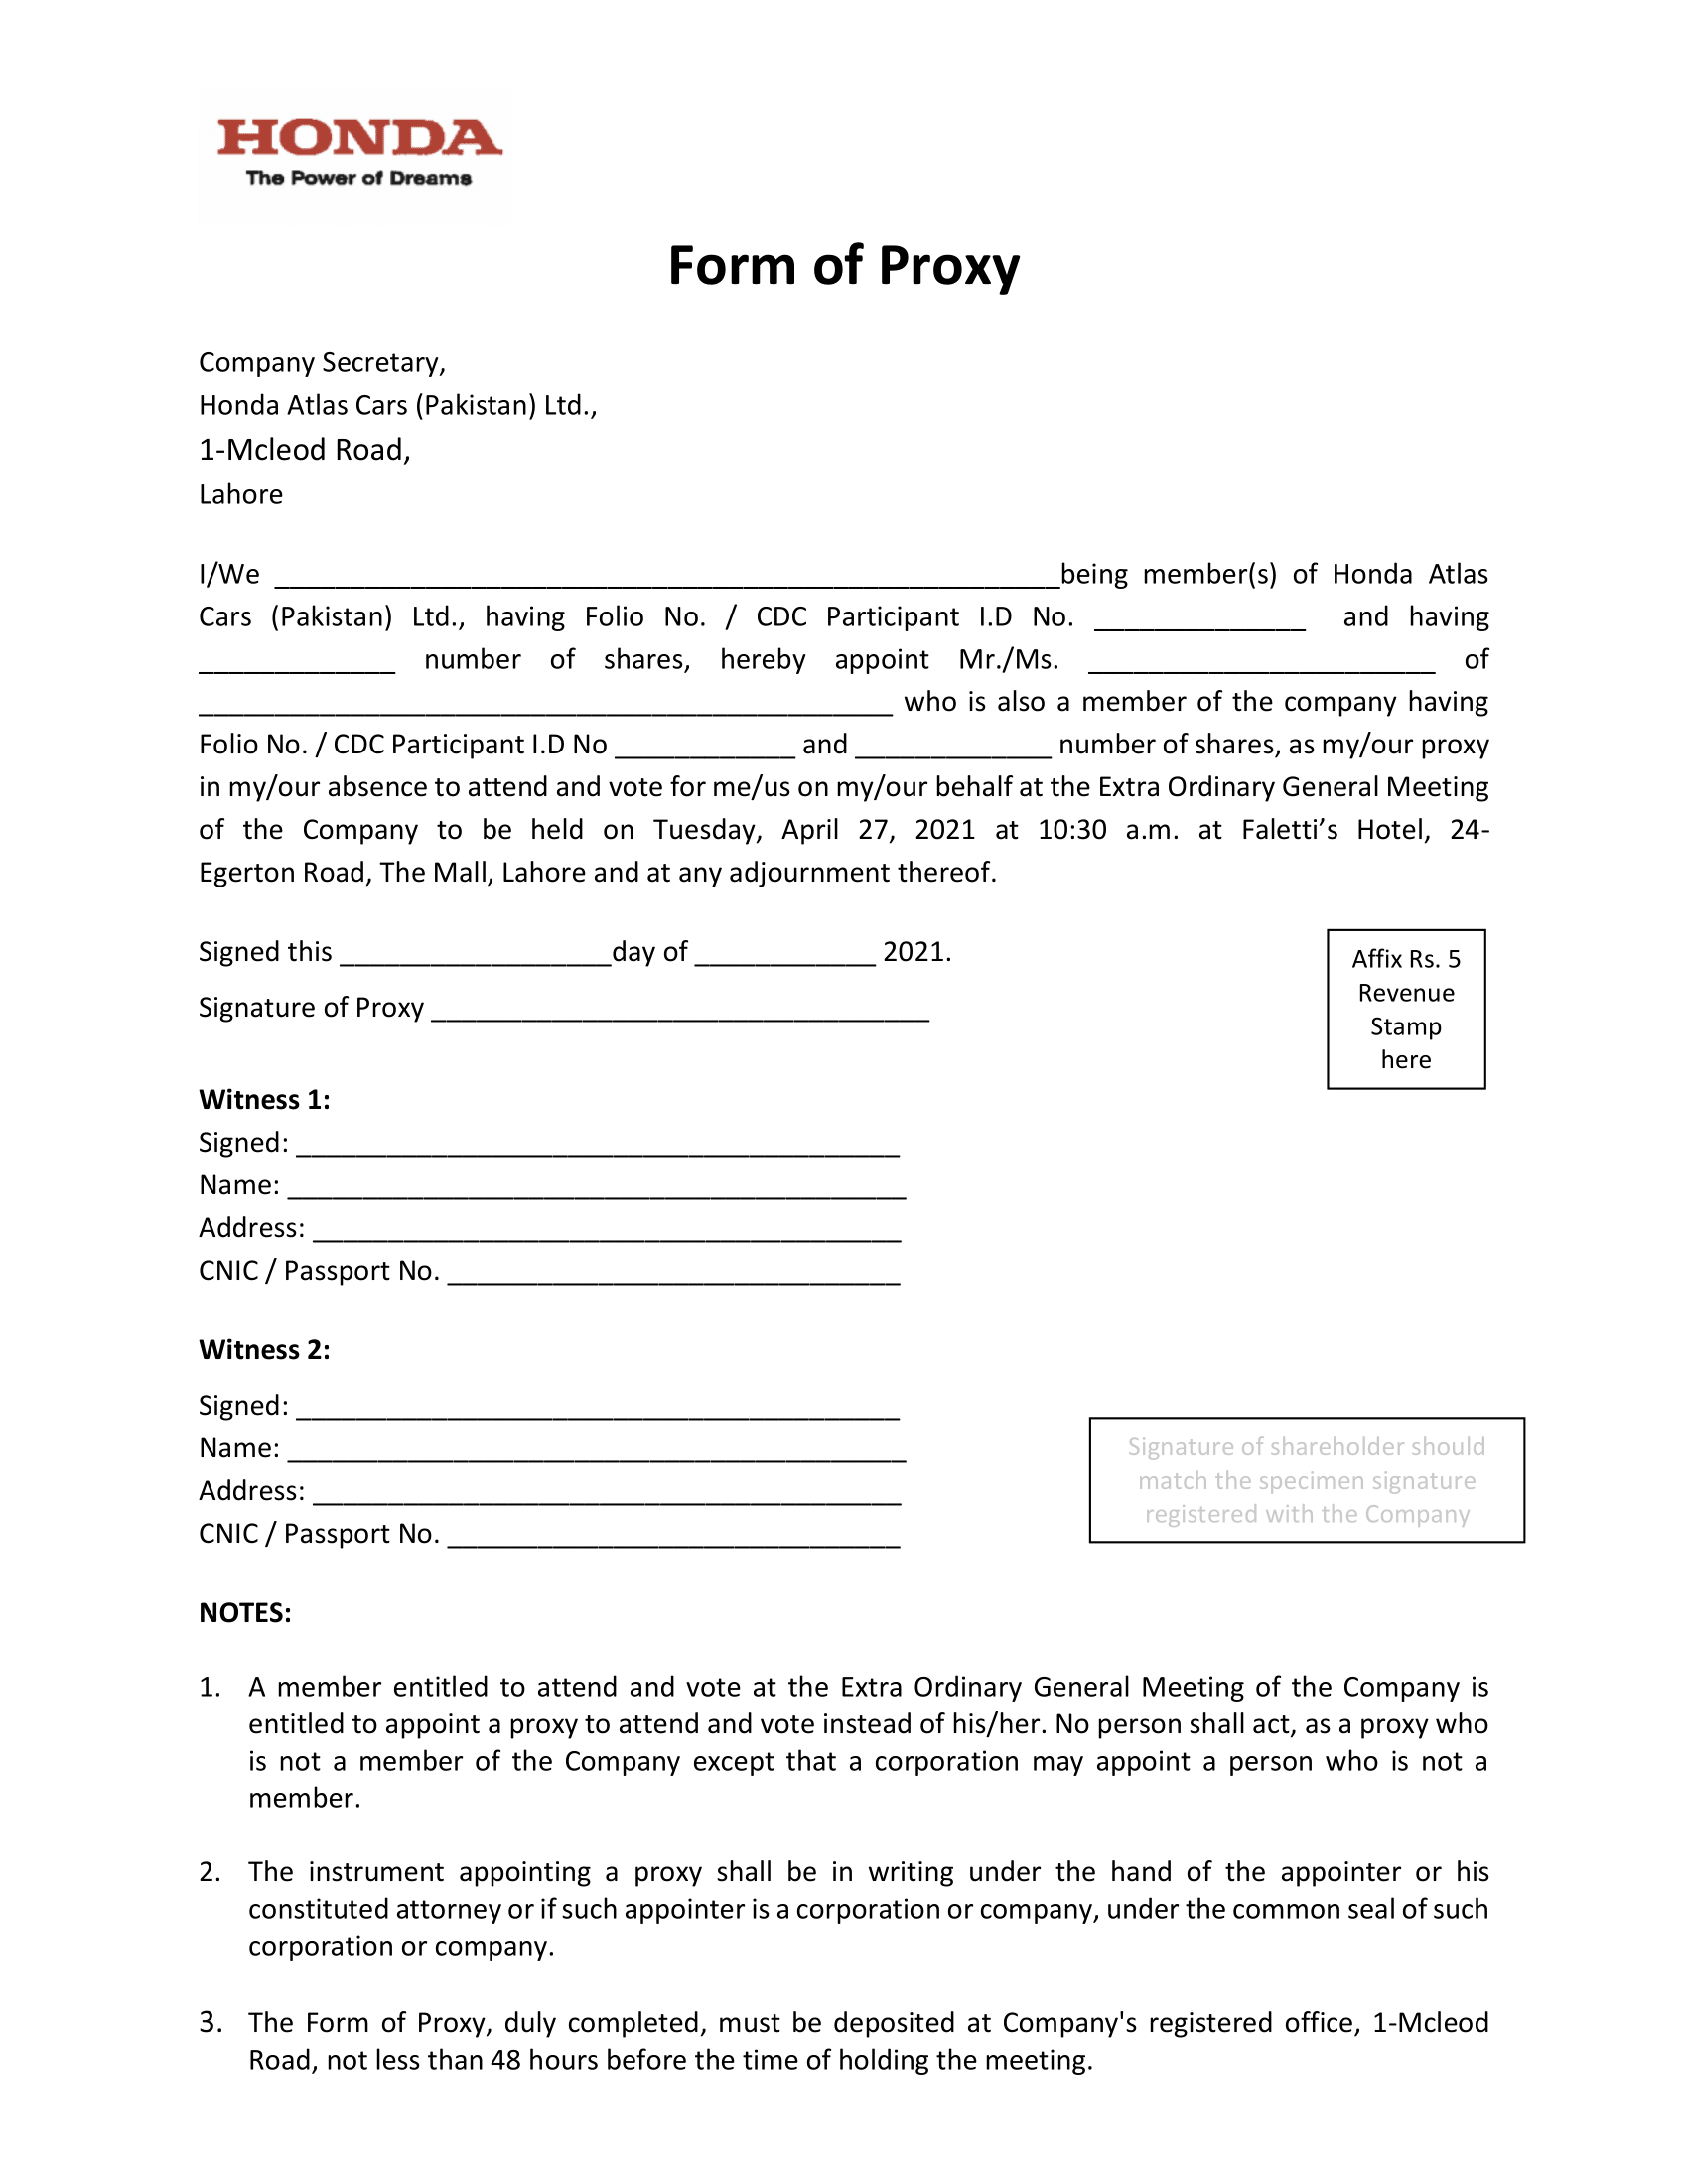 Proxy Form